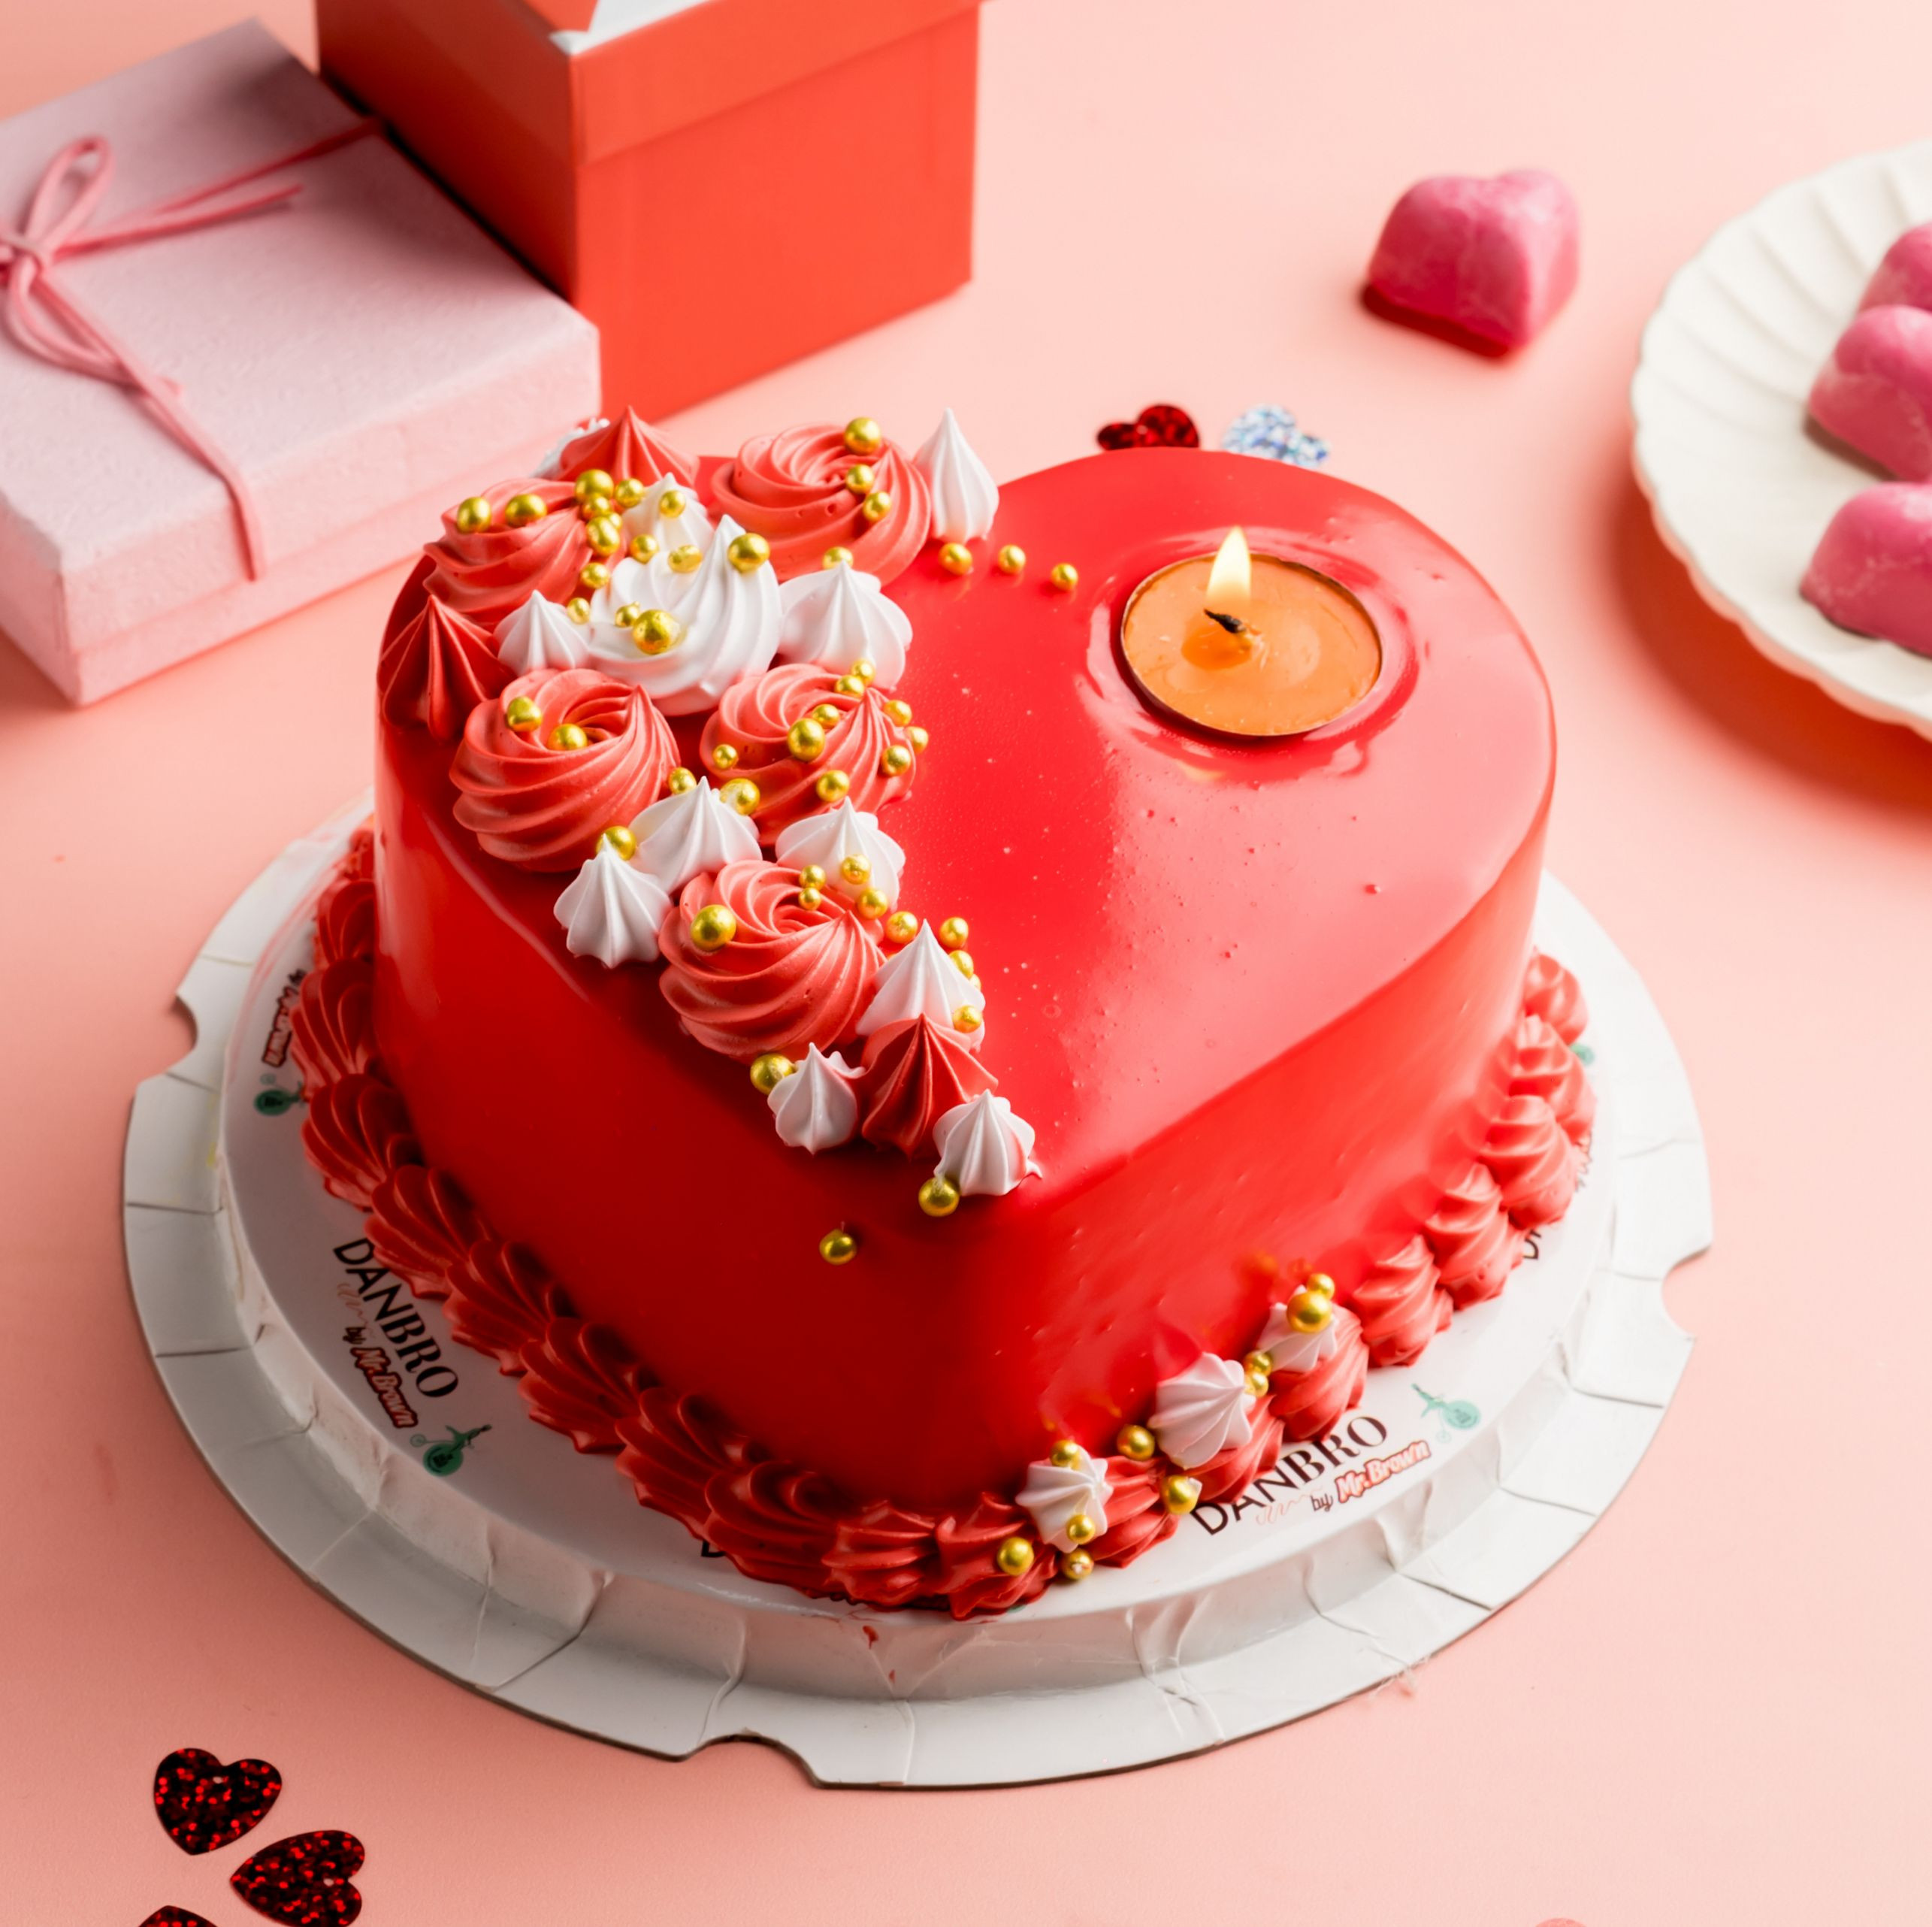 VALENTINES SPECIAL CAKE 002 1 kg - Durgapur Cake Delivery Shop